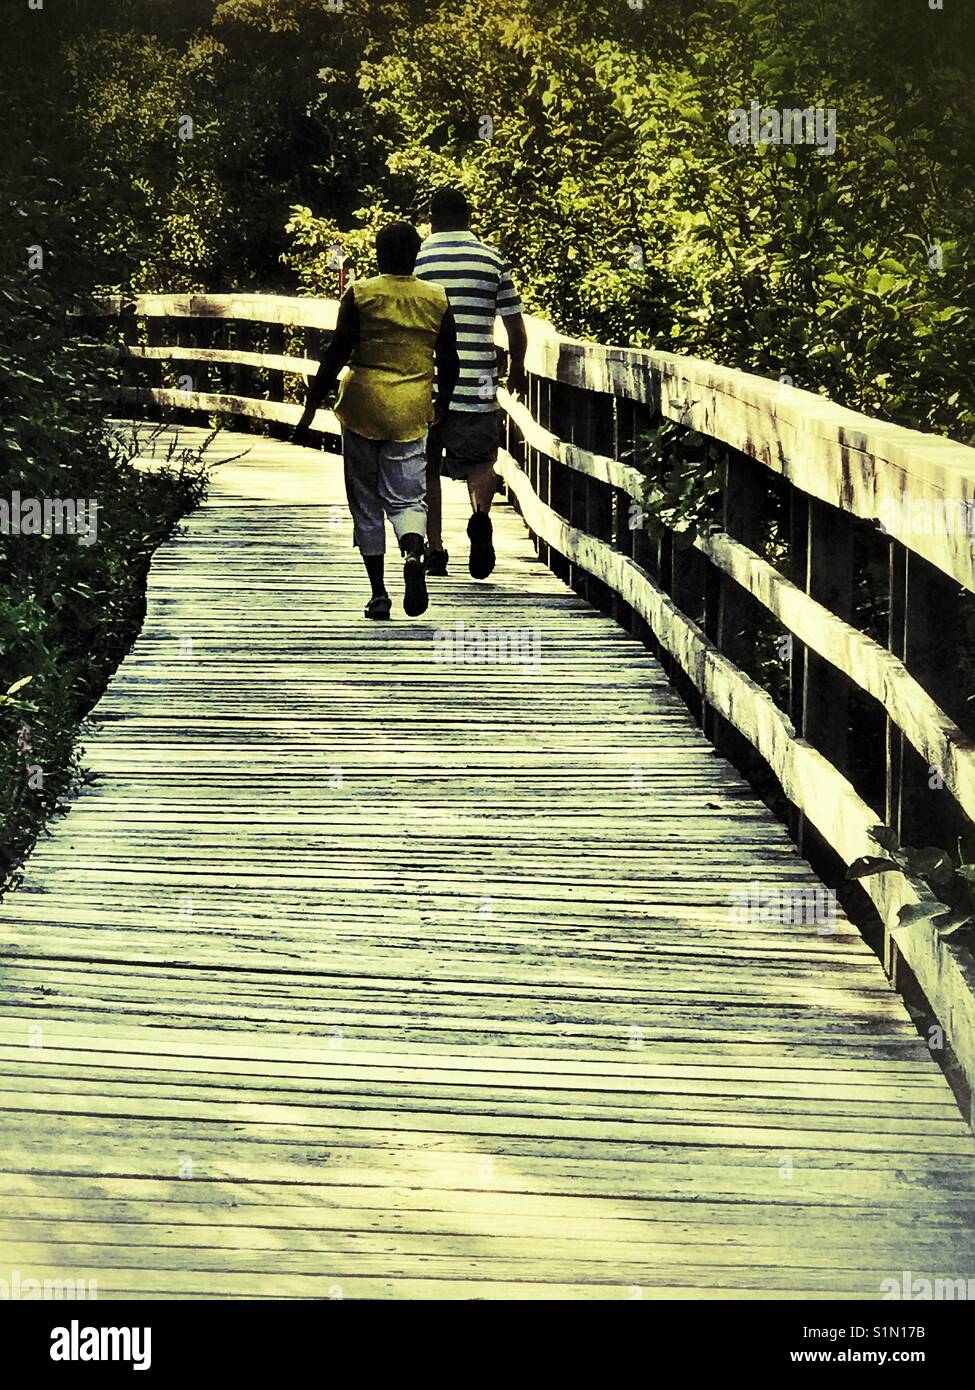 Couple walking on a boardwalk. Stock Photo